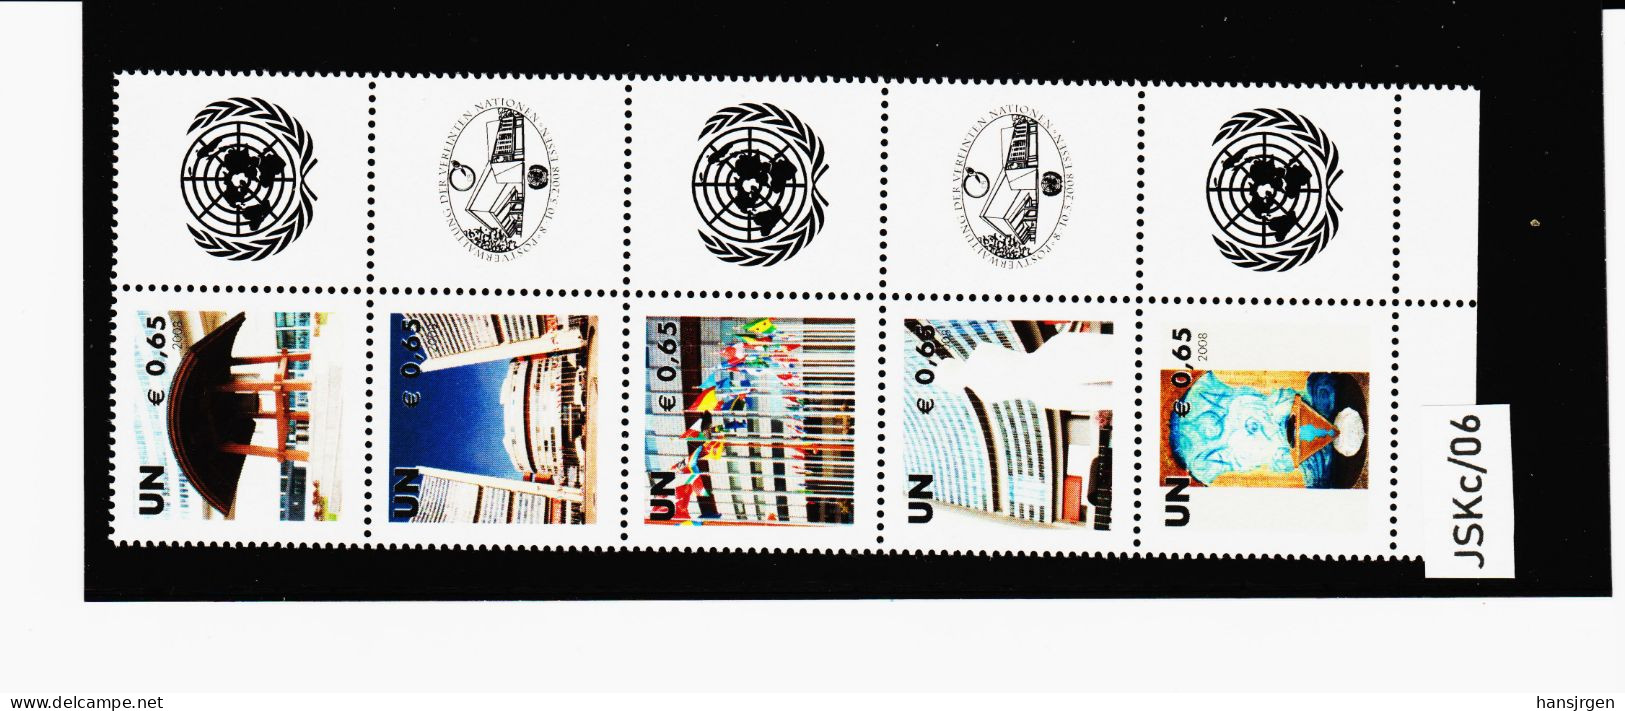 JSKc/06 UNO WIEN 2008 GRUSSMARKEN MICHL 538/42 FÜNFERSTREIFEN ** Postfrisch Siehe ABBILBUNG - Unused Stamps